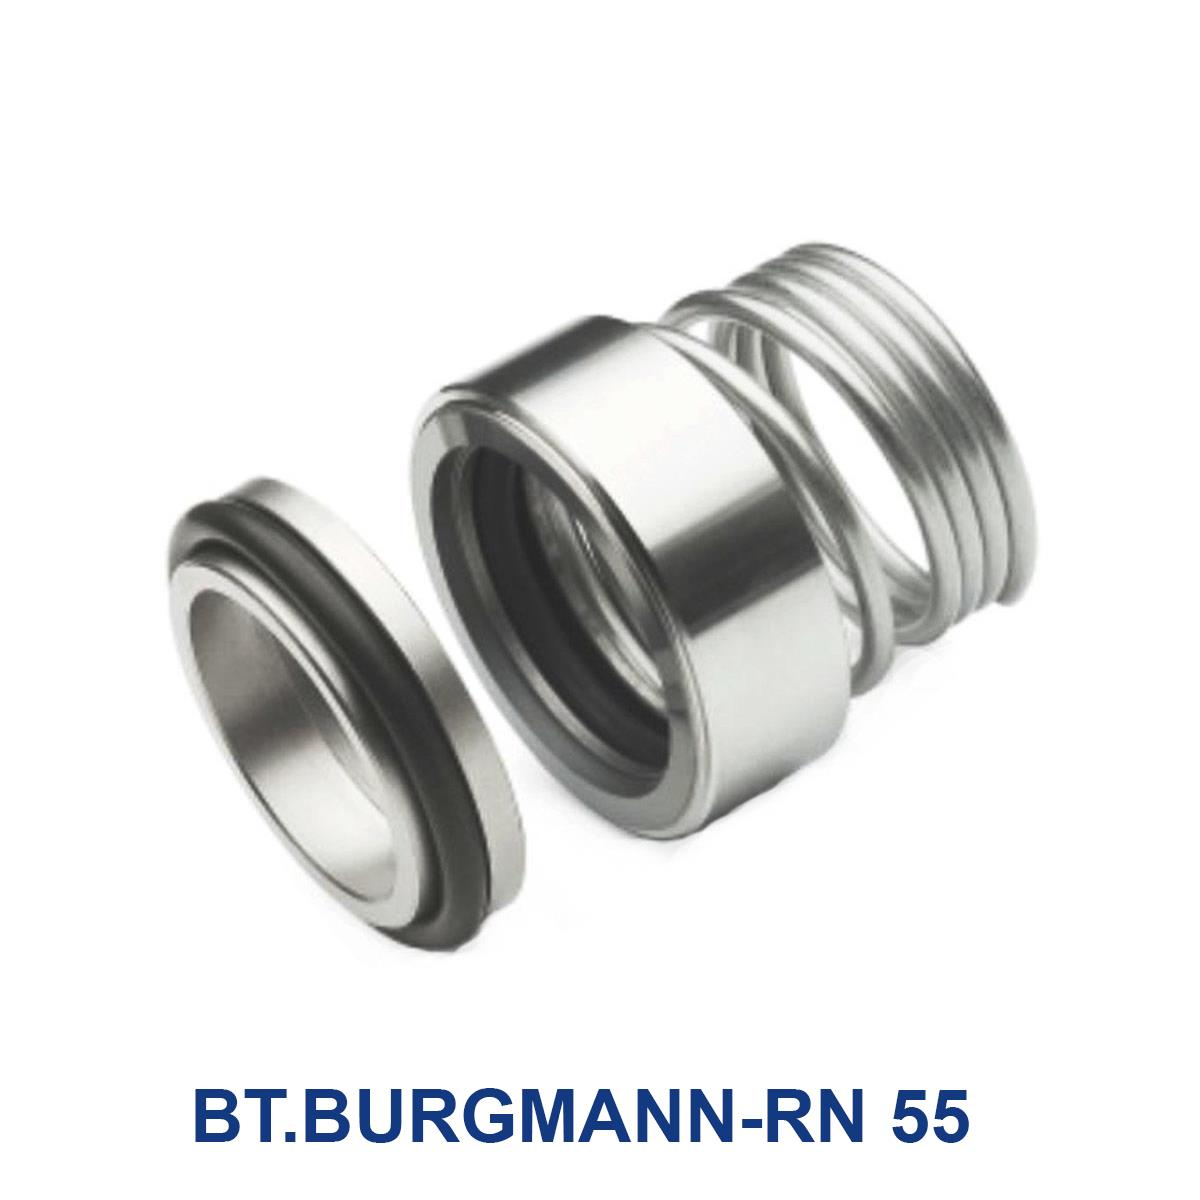 BT.BURGMANN-RN-55